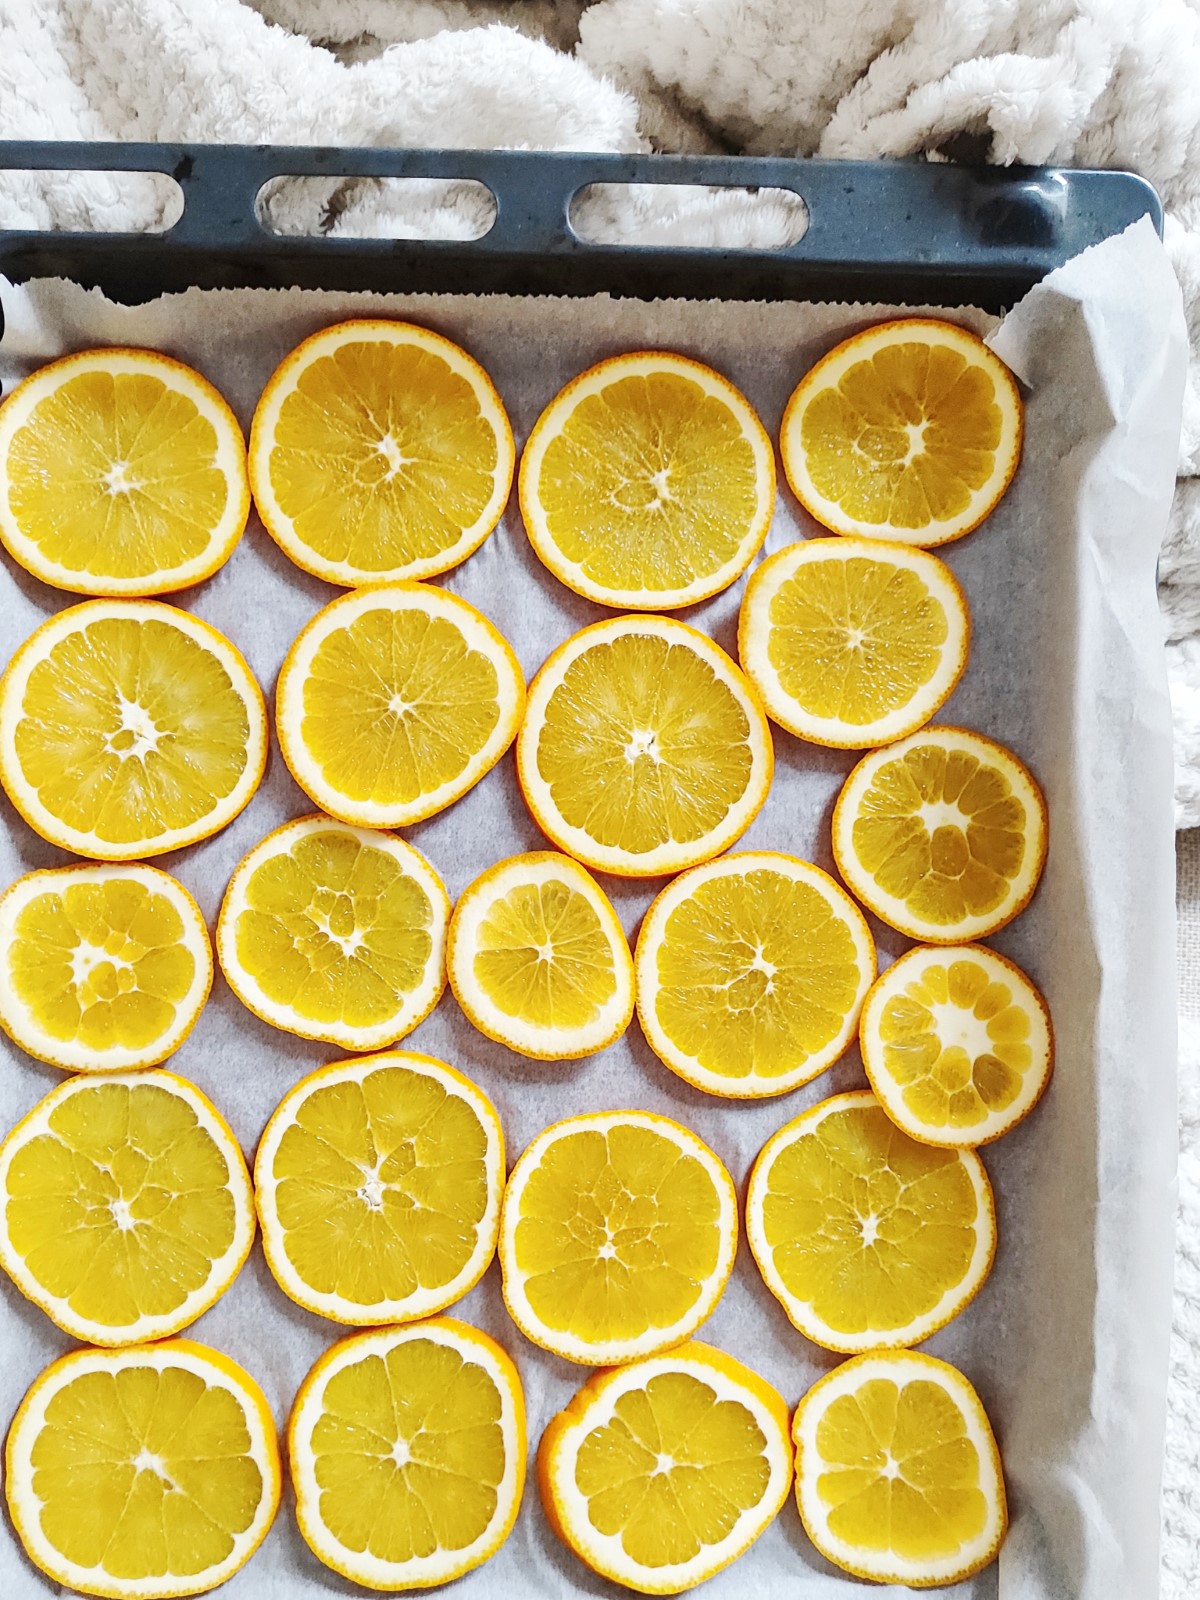 Dehydrated Oranges - Oranges